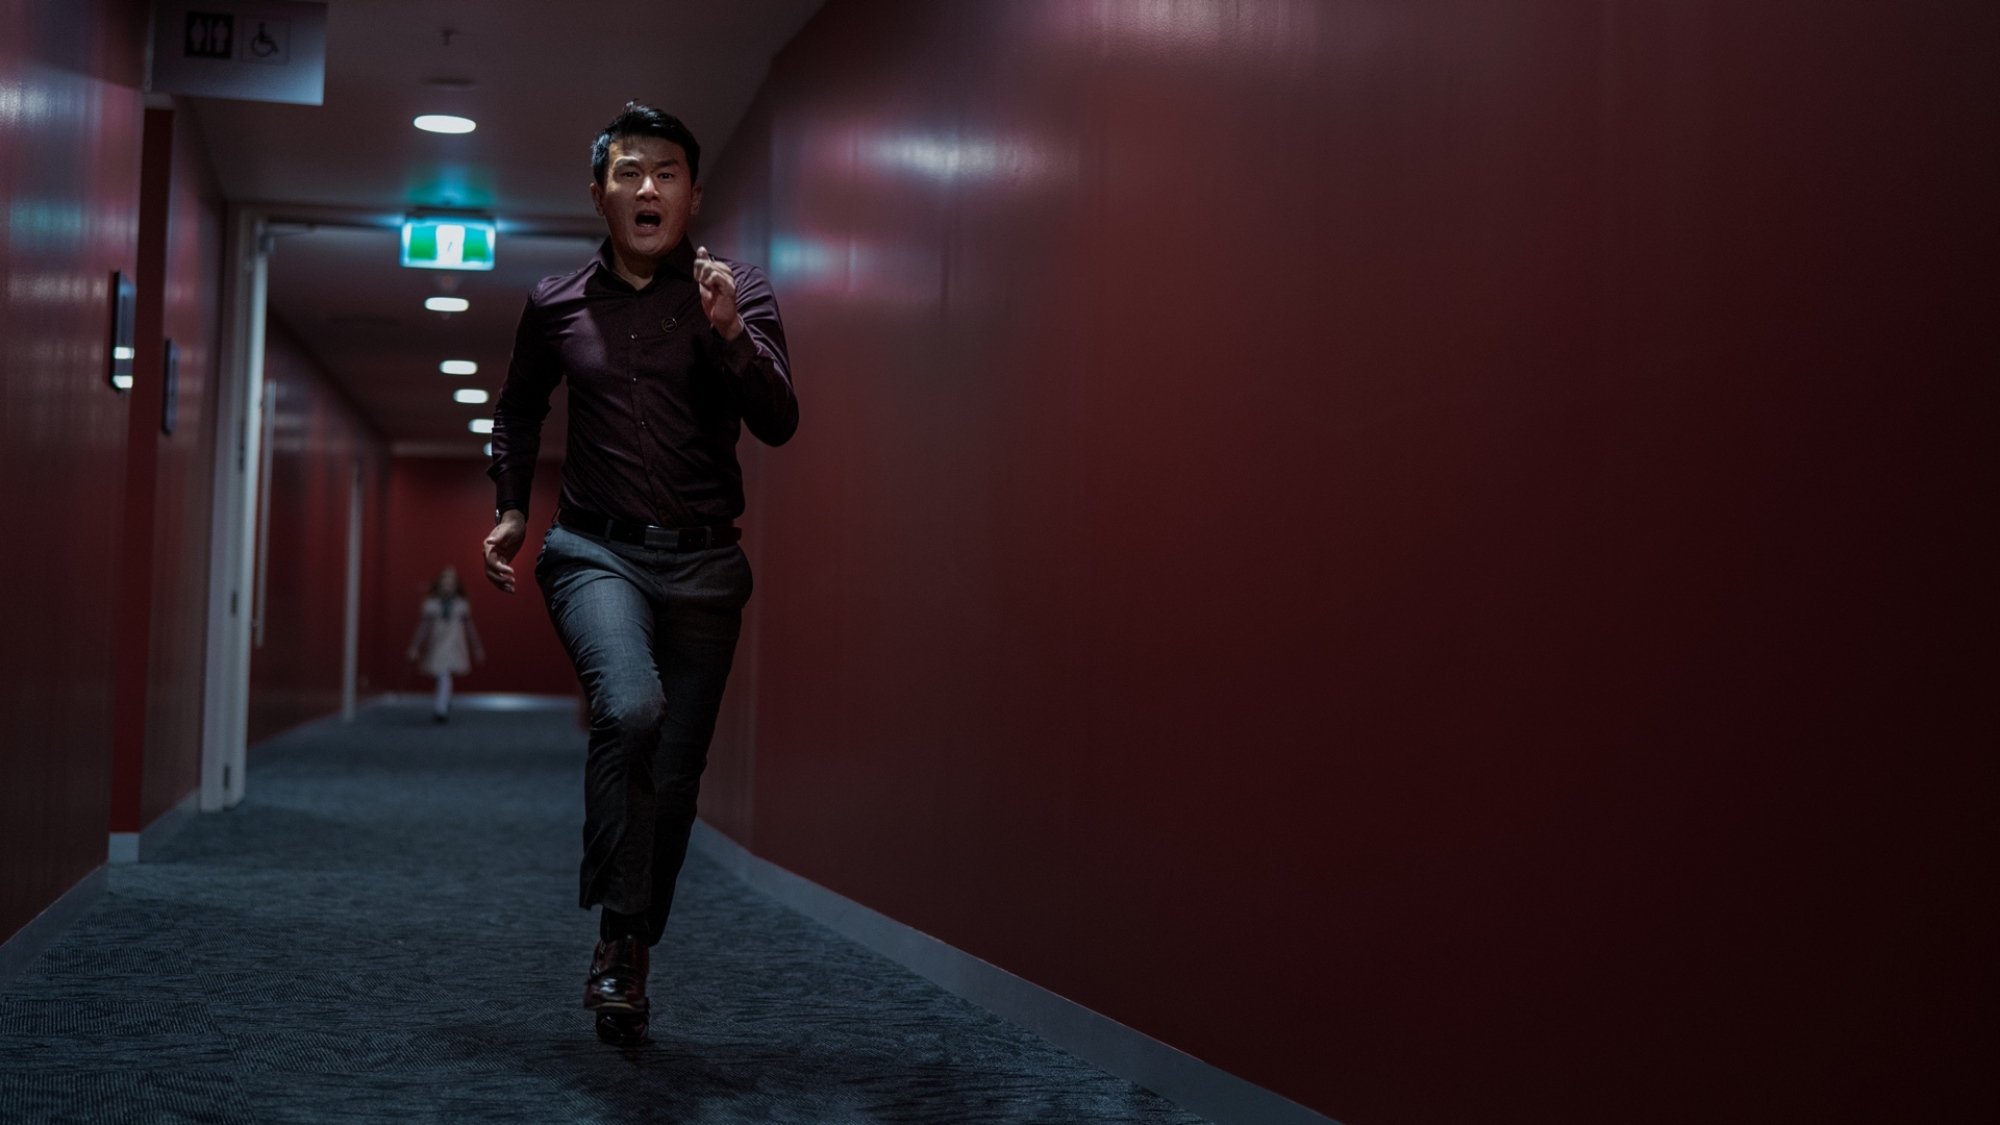 Un homme court dans un couloir aux murs rouge foncé tandis qu'une poupée grandeur nature se cache en arrière-plan.